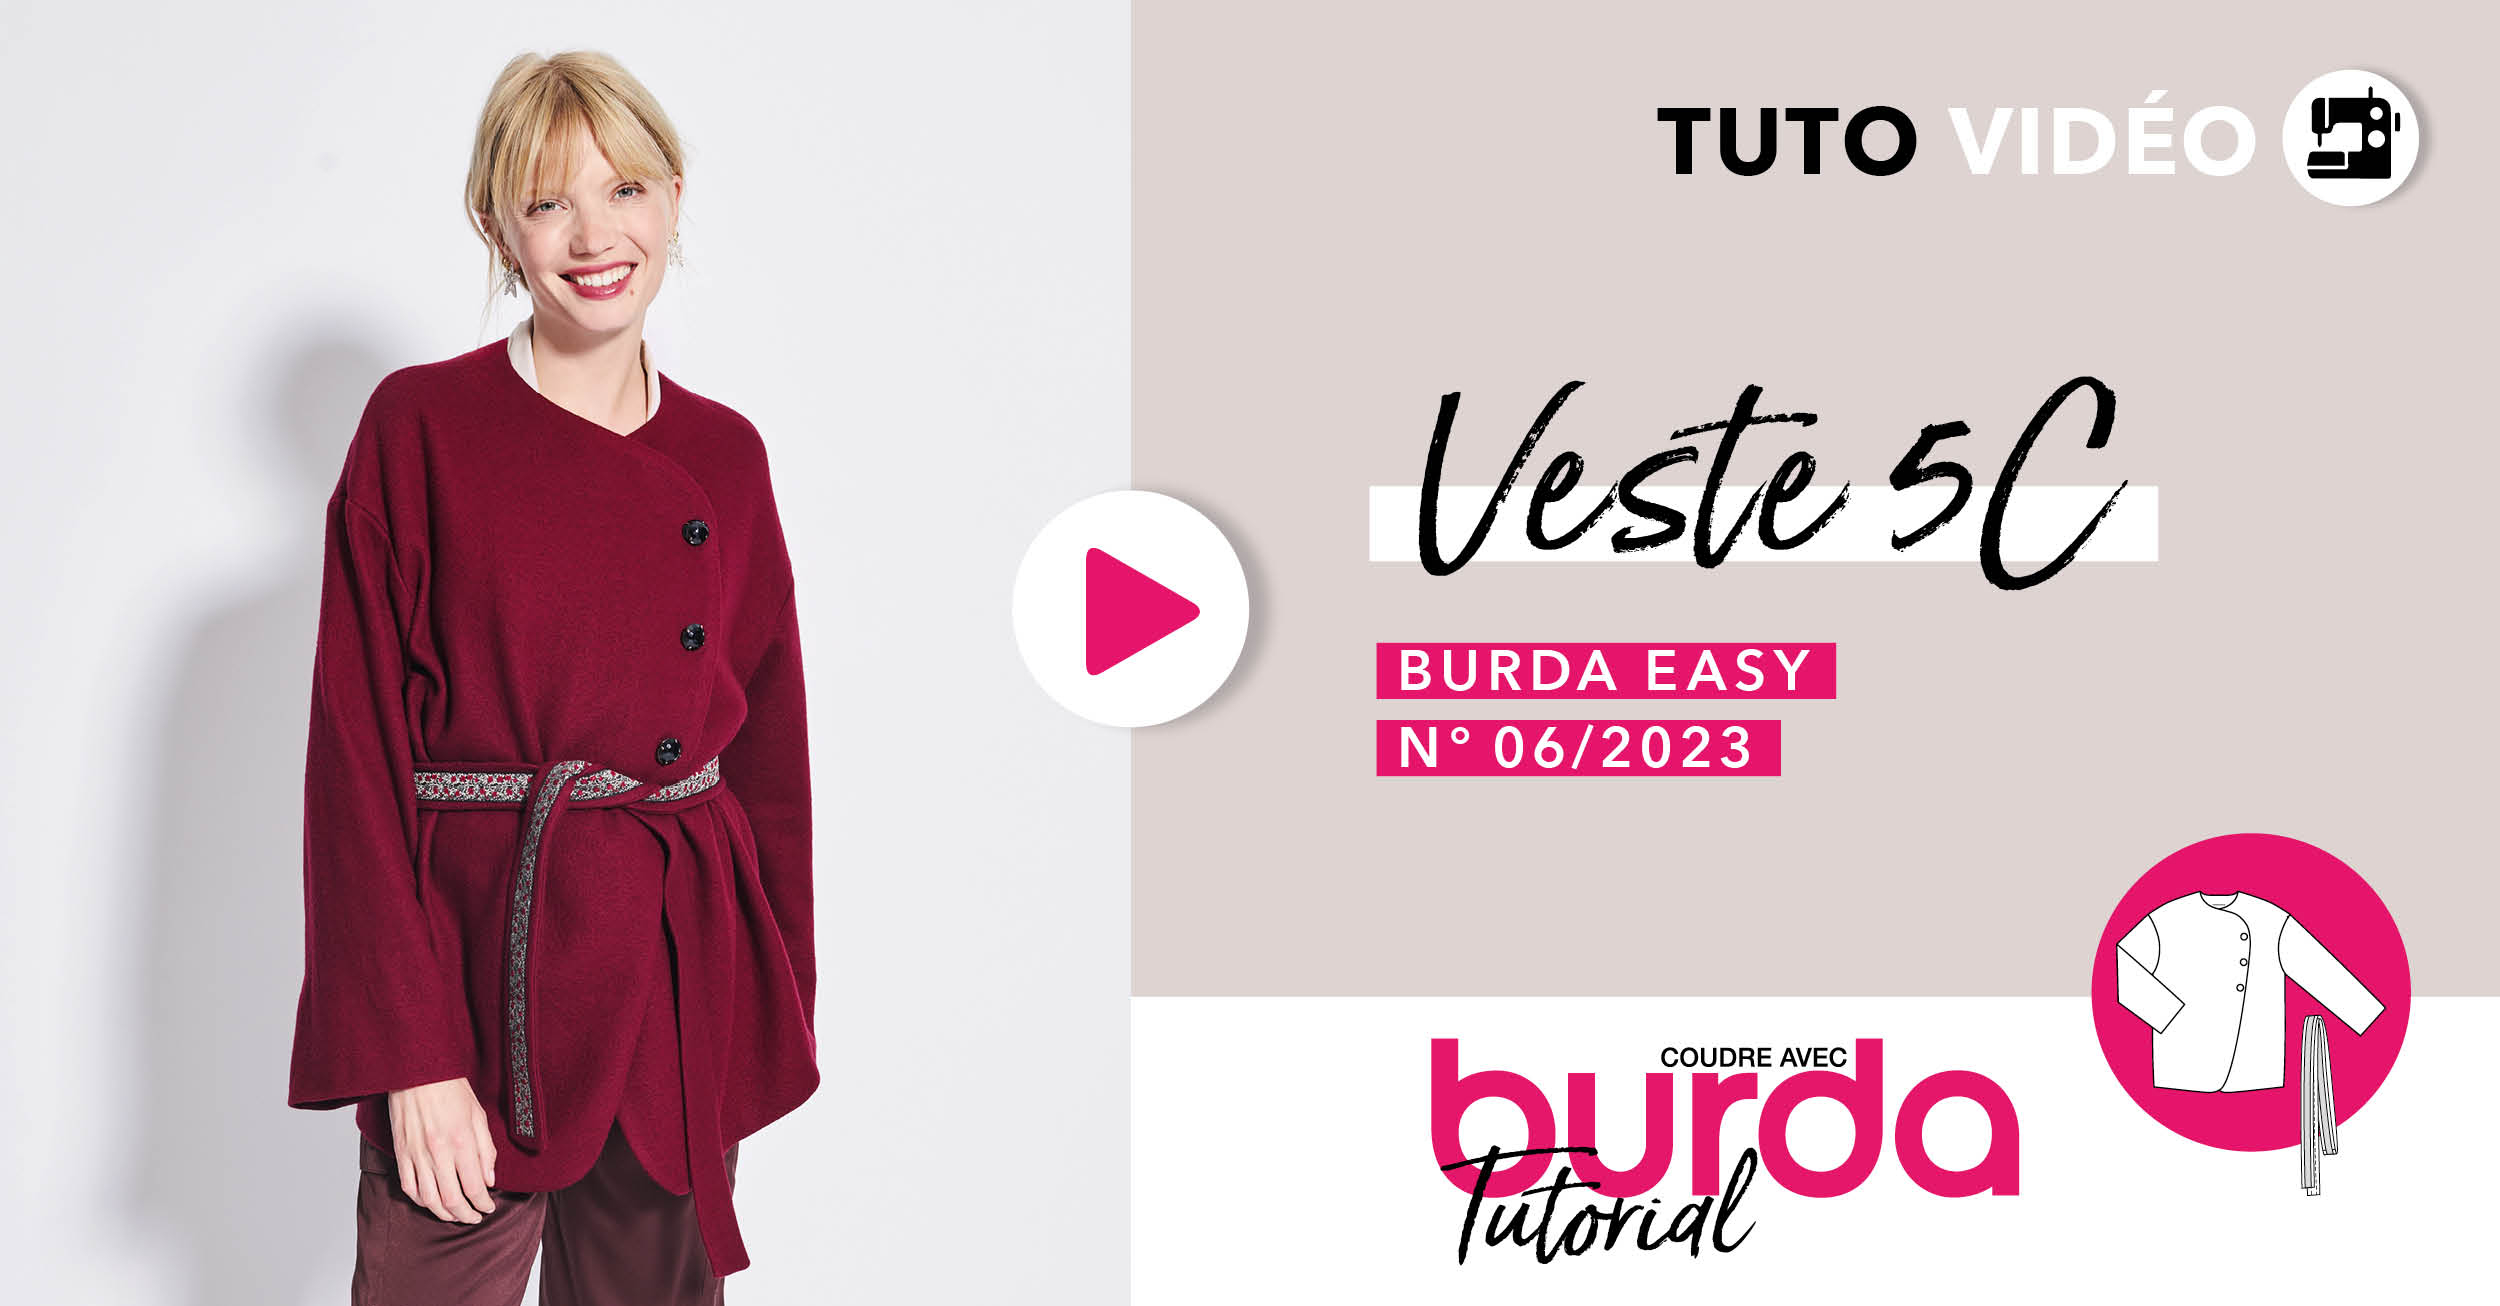 Tuto vidéo : Veste 5C - burda easy n°6 novembre/décembre 2023